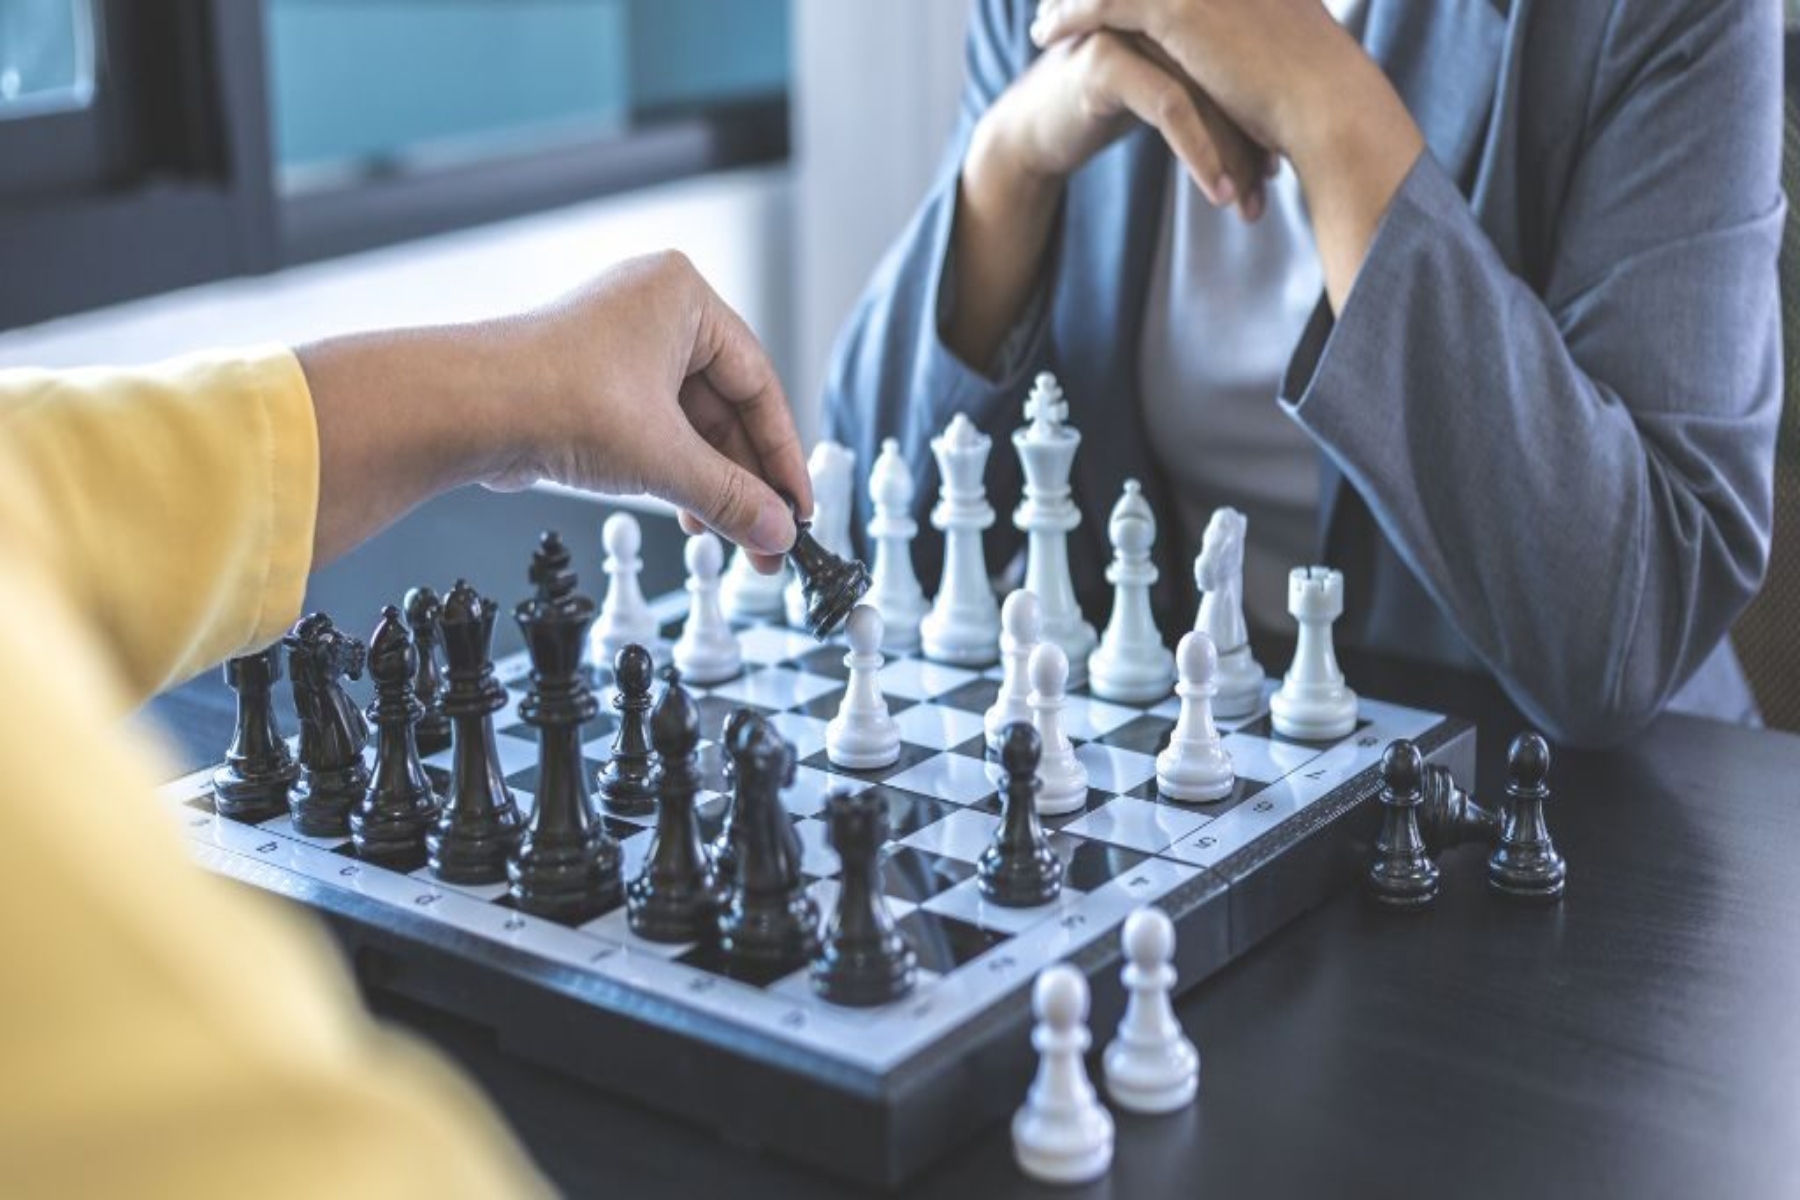 Σκάκι υγεία: Πώς το να παίζουμε σκάκι μπορεί να βελτιώσει σημαντικά την ψυχική σας υγεία;